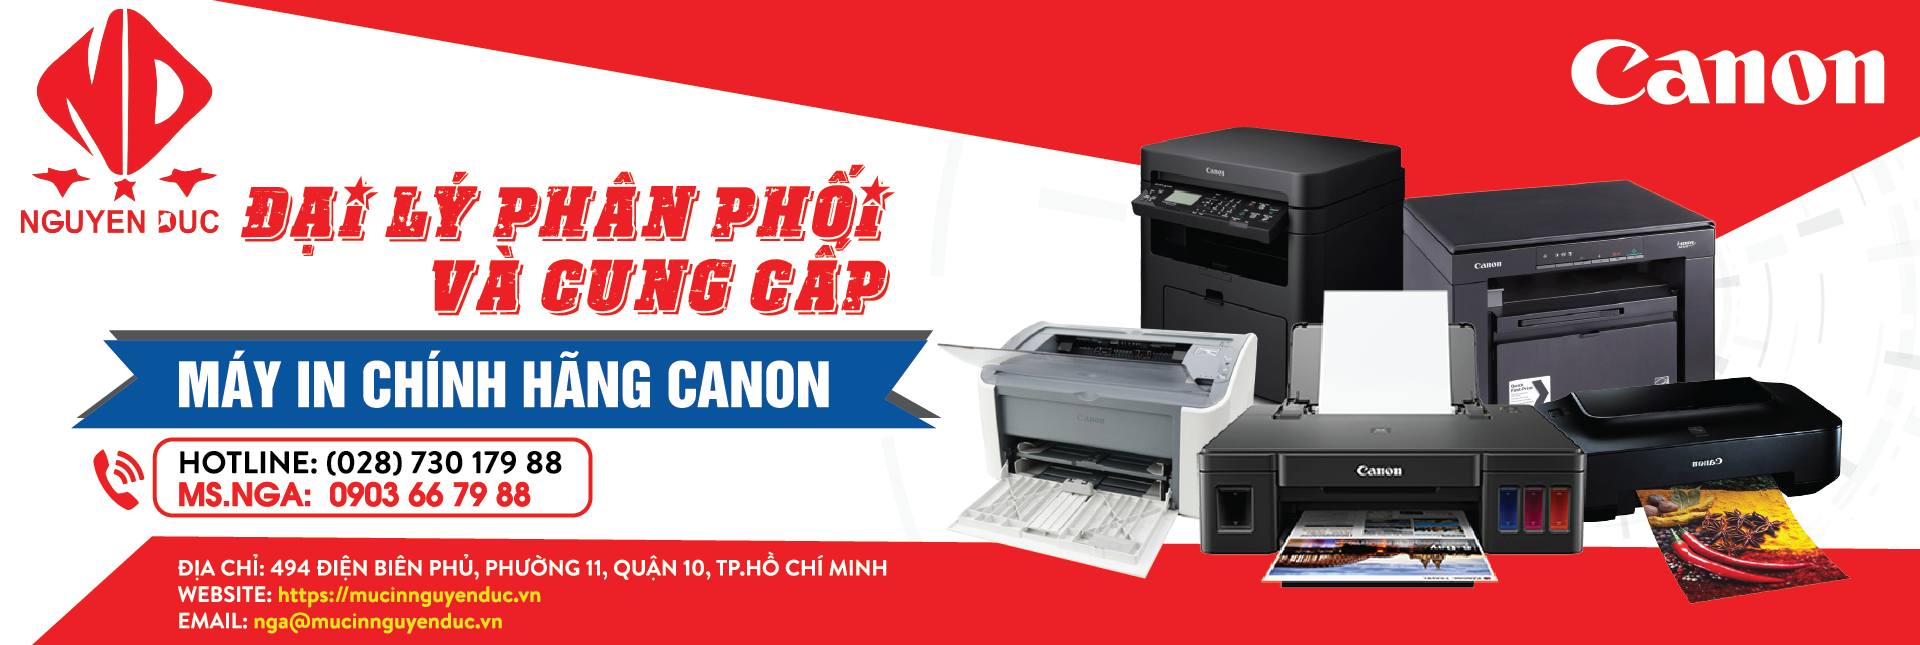 Đại lý phân phối máy in Canon Pixma G6070 chính hãng, giao hàng tại khu vực tỉnh Nam Định